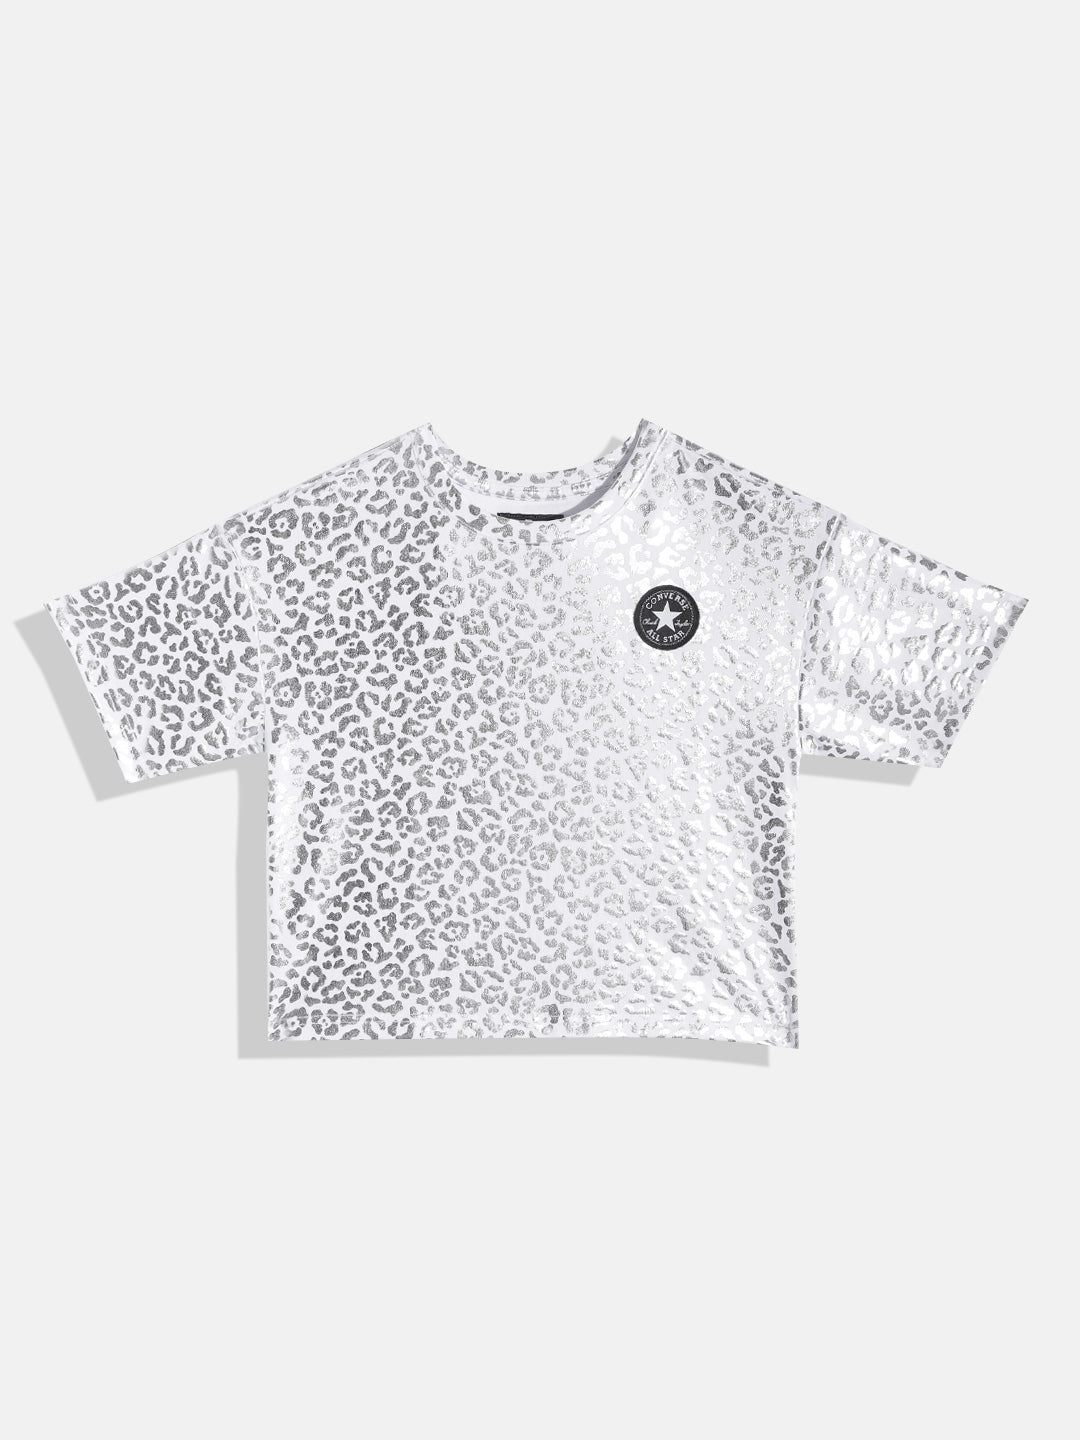 Converse Shine Print Dri-FIT Tee T Shirt Converse   